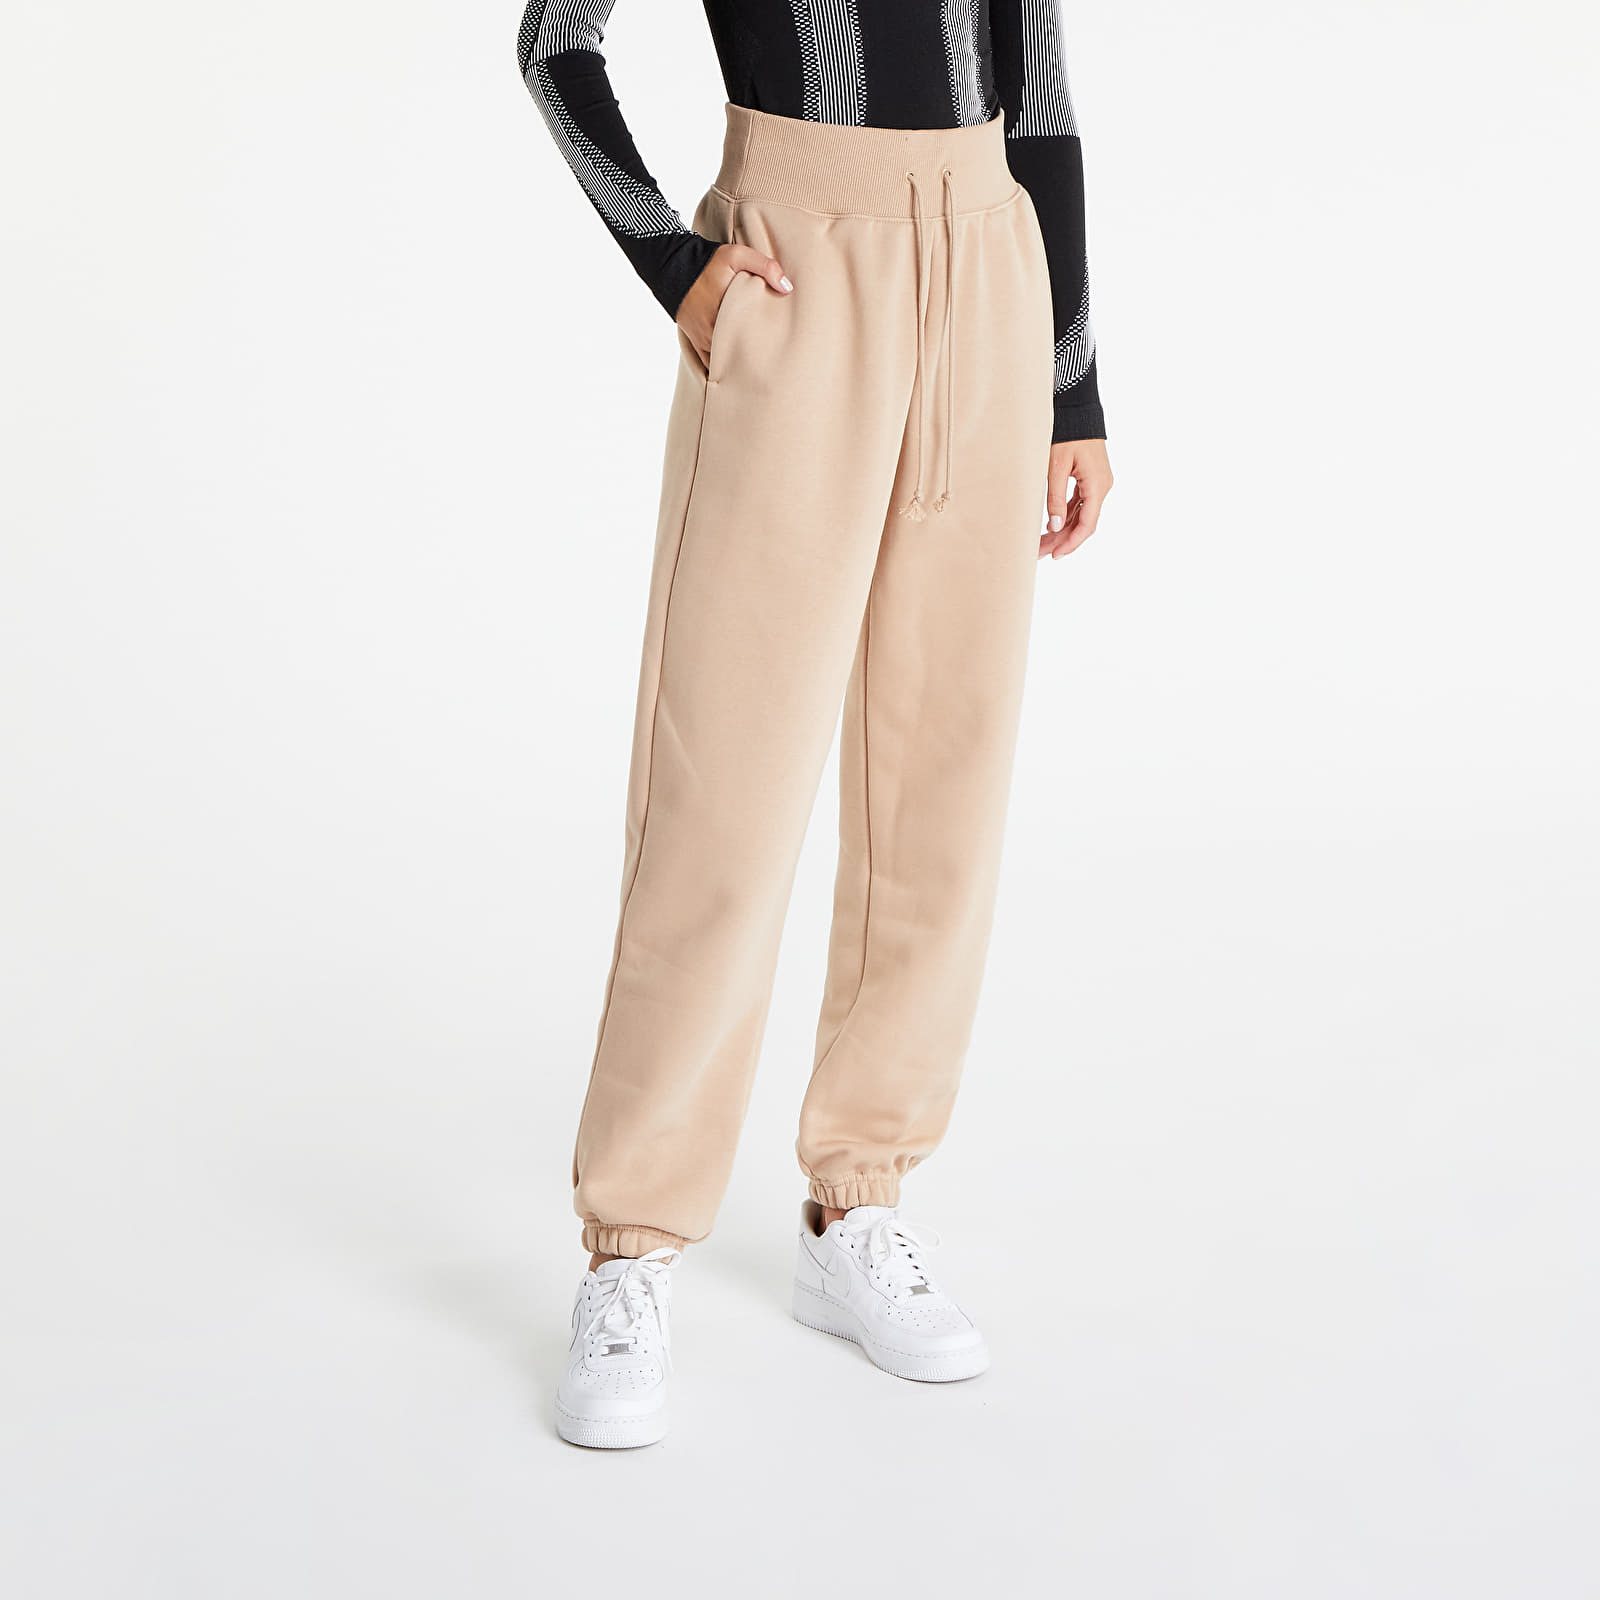 Nike Sportswear Phoenix Fleece Women's High-Waisted Oversized Sweatpants Hemp/ Sail